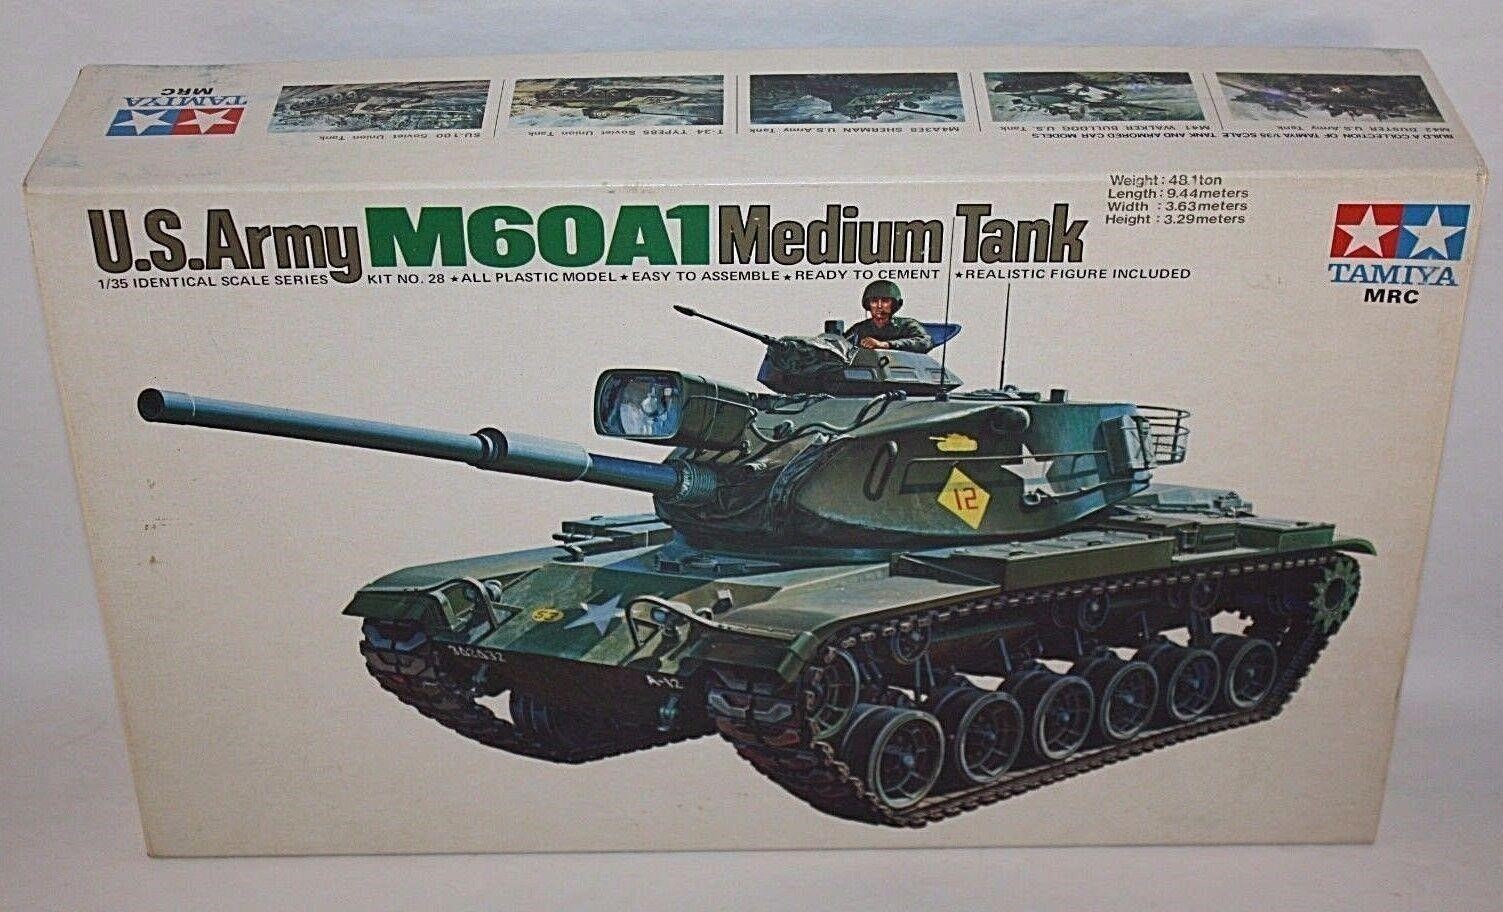 TAMIYA U.S ARMY M60A1 MEDIUM TANK 1/35 SCALE MODEL